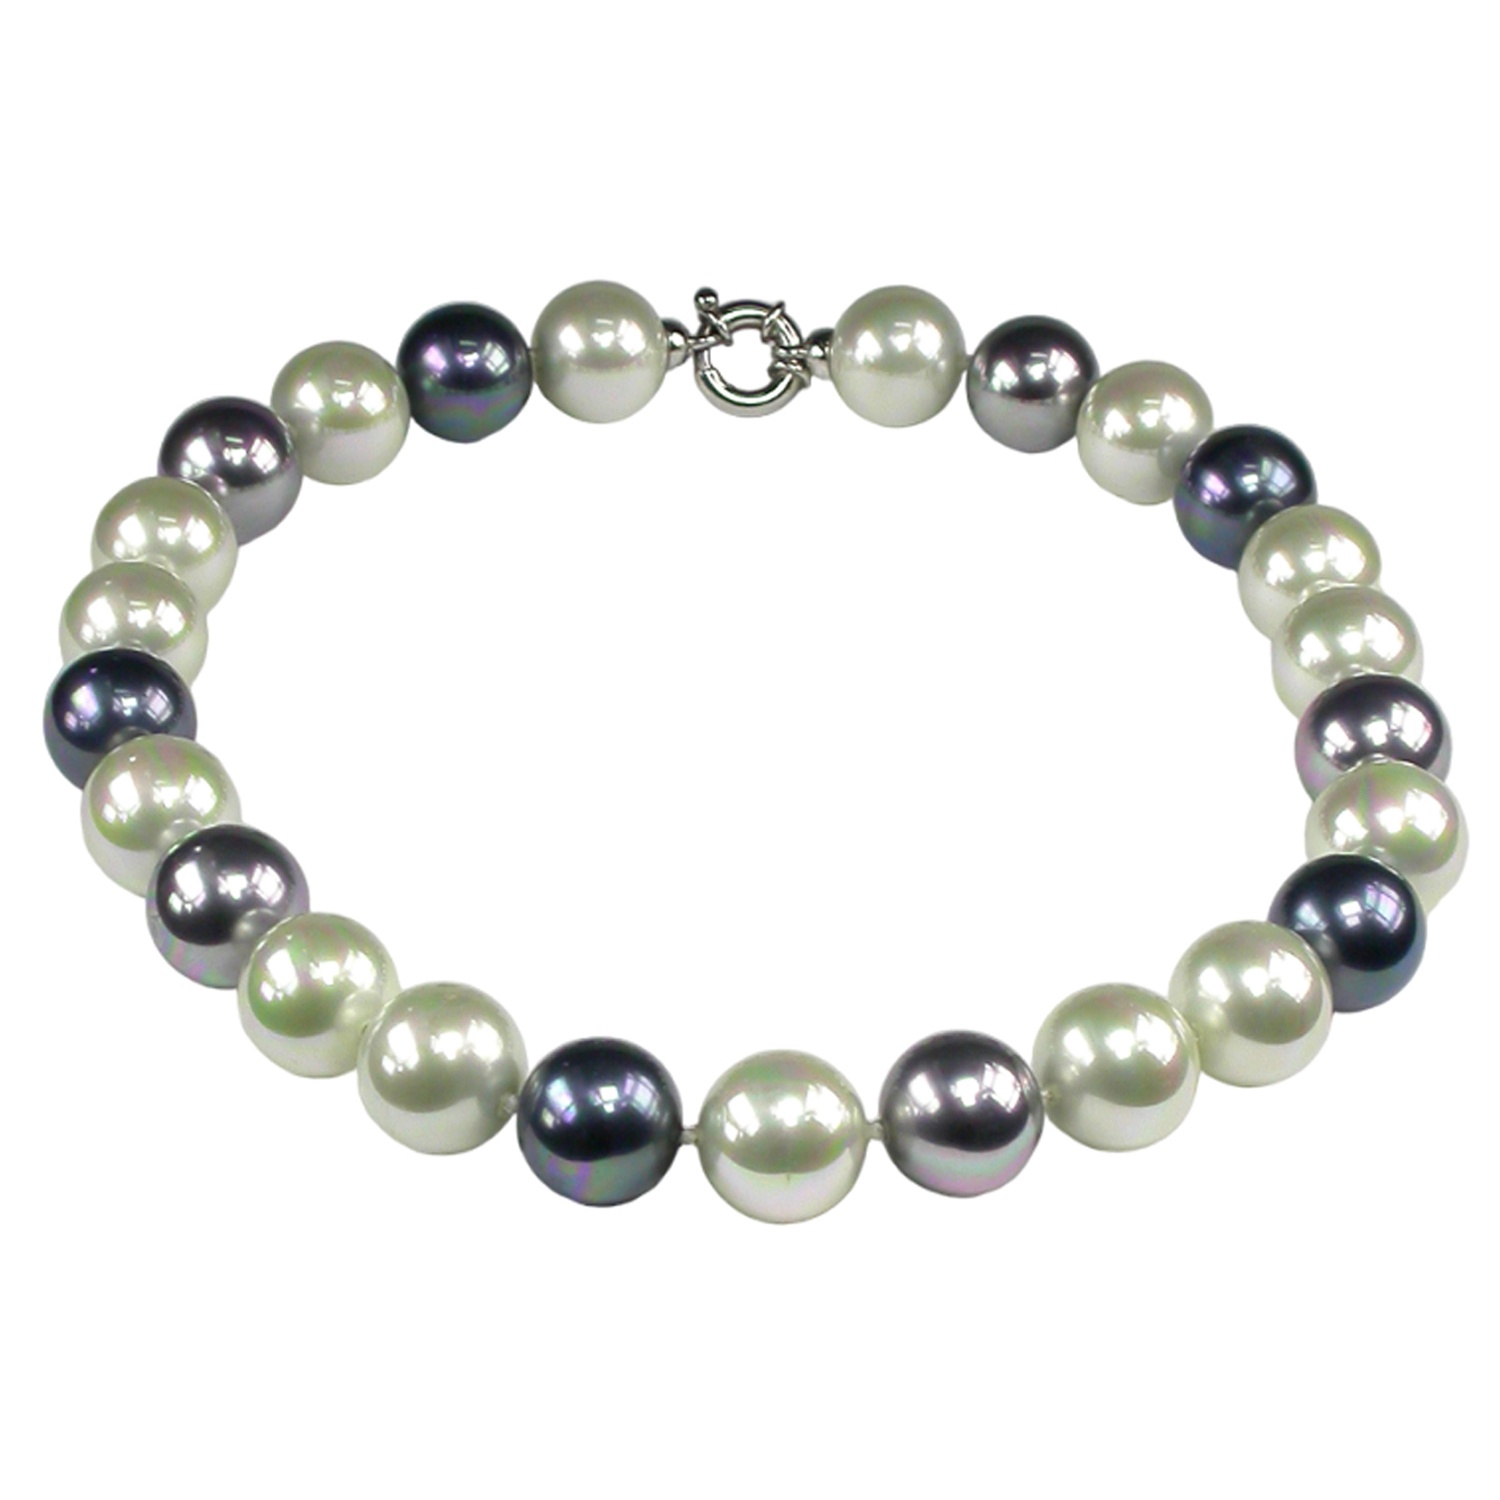 Collar clásico de Perlas en blanco, gris y negro.